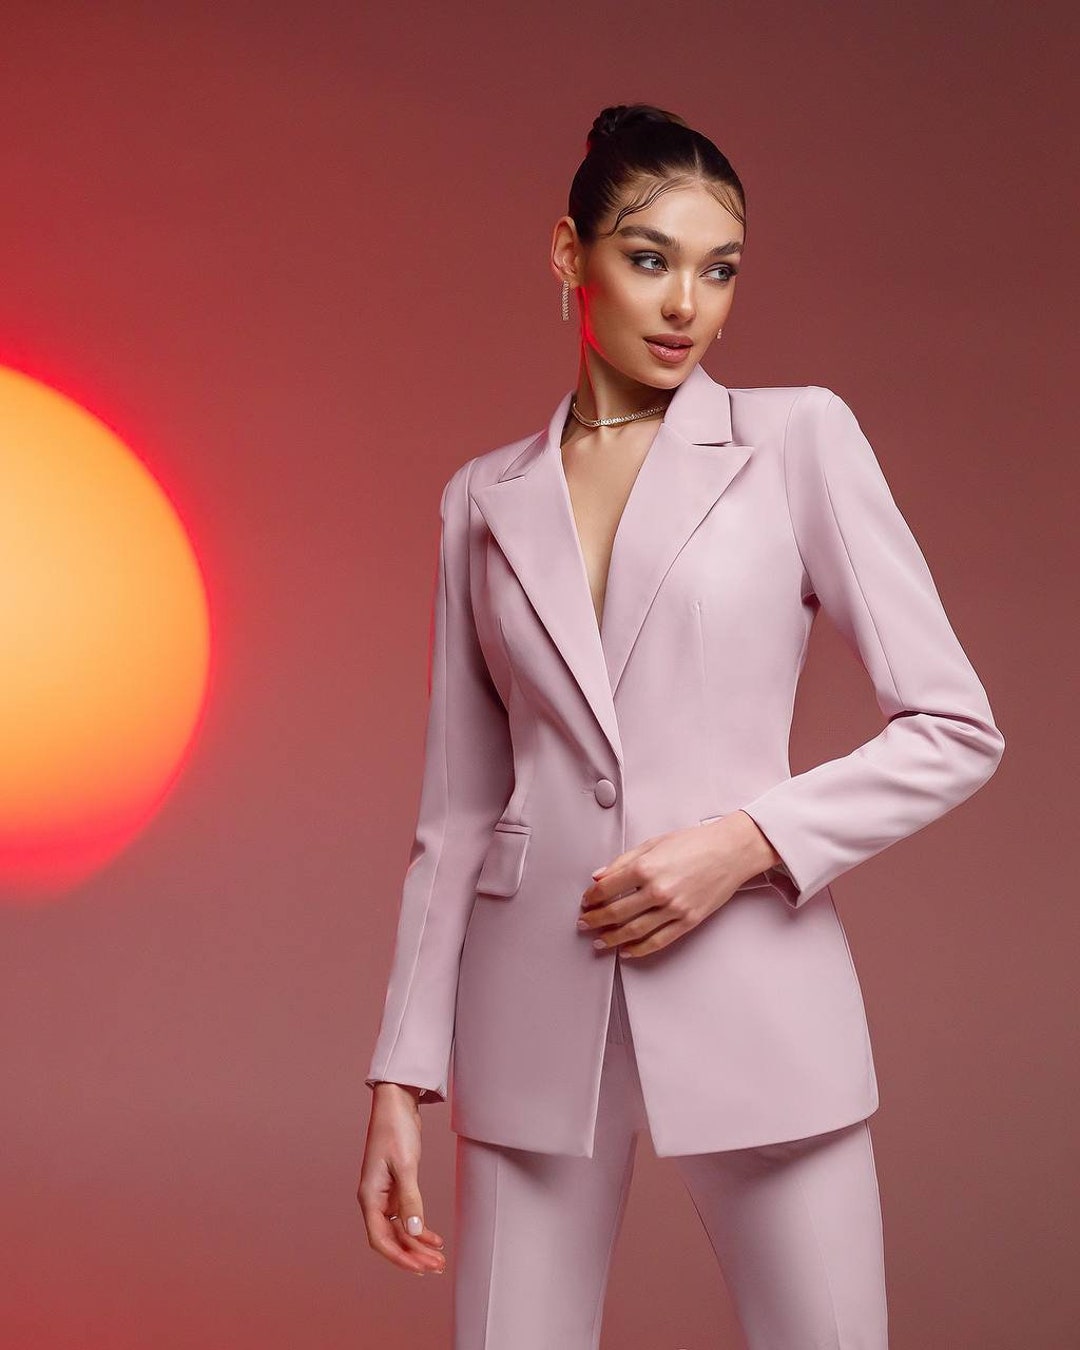 GUCCI Damen Anzug aus Seide in Rosa / Pink Größe: IT 44